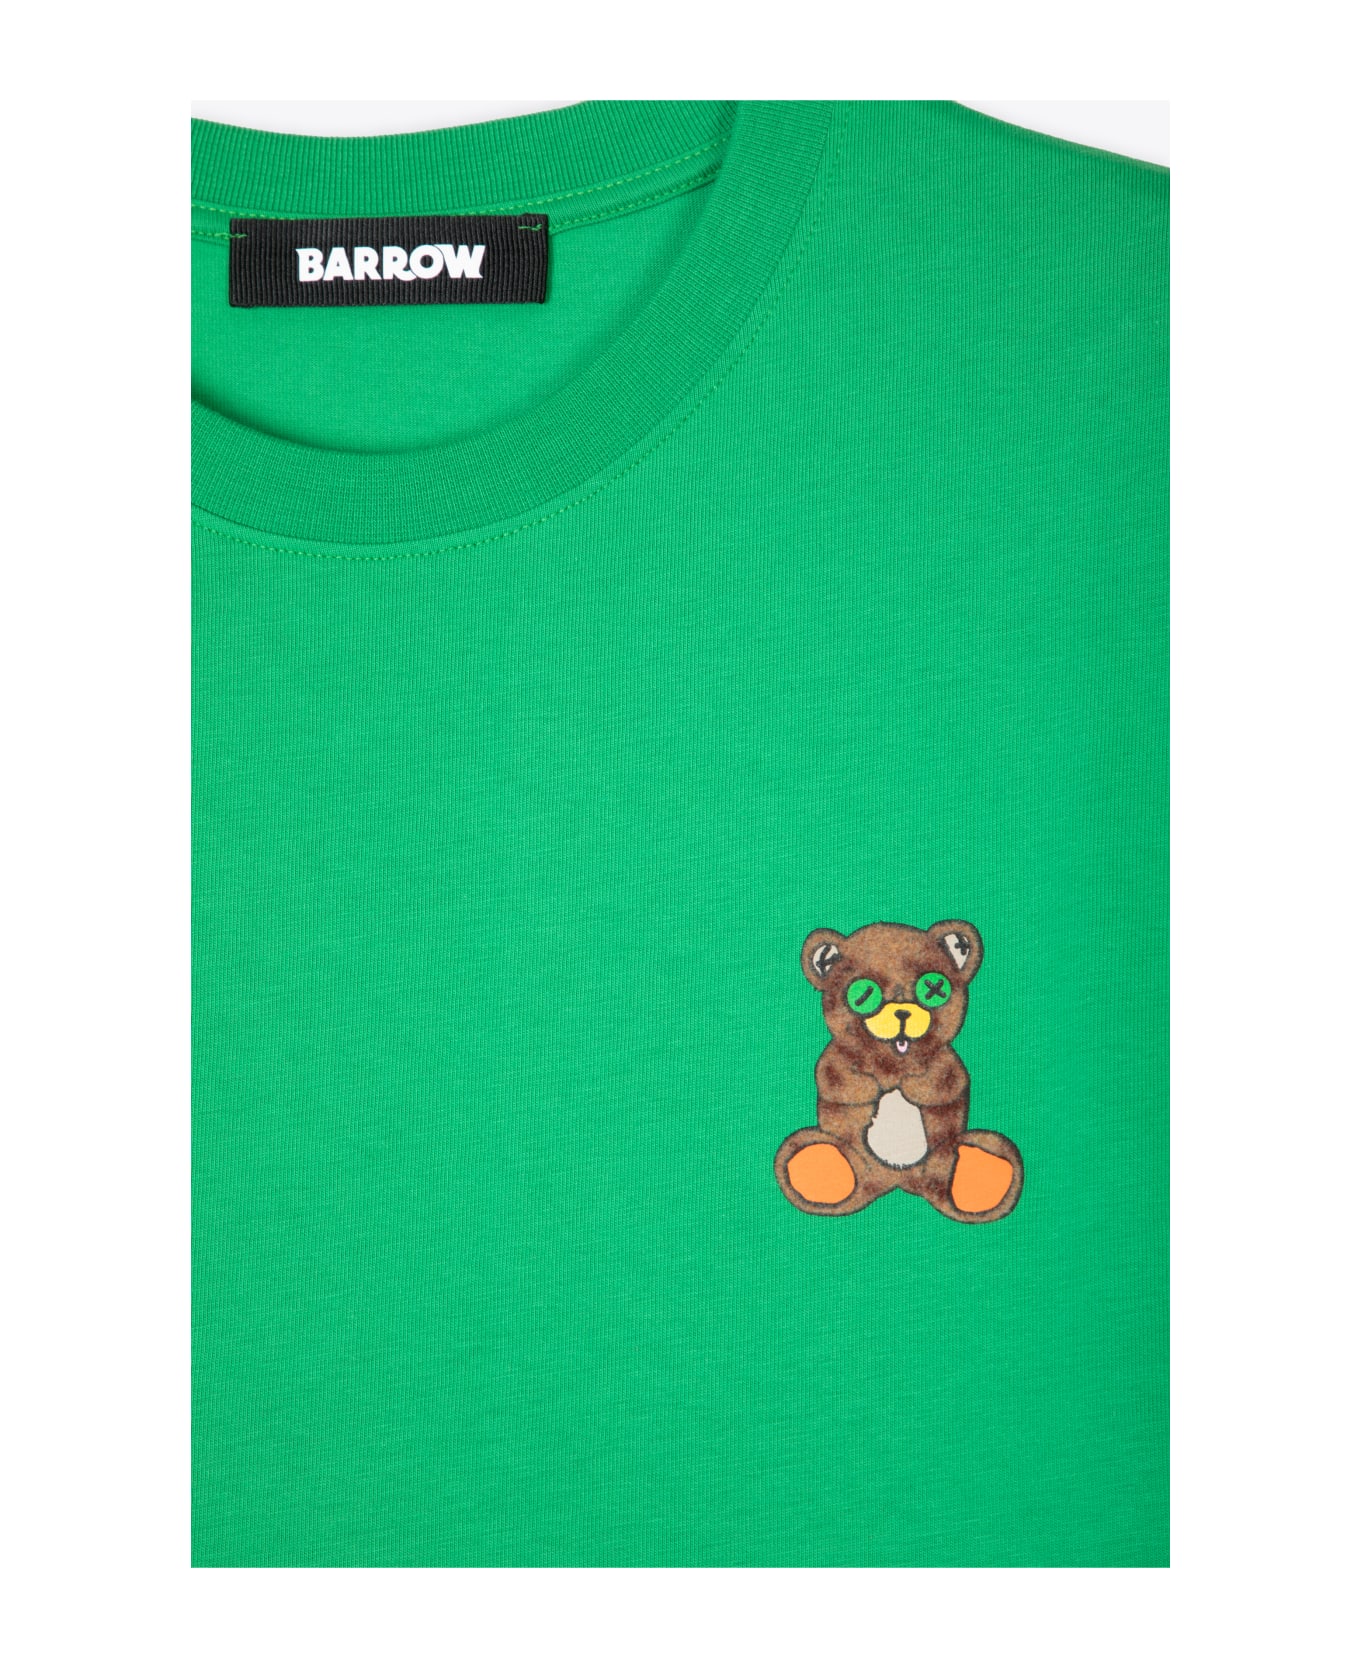 Barrow Jersey T-shirt Unisex Emerald Green T-shirt With Chest Teddy Bear Print - Green シャツ